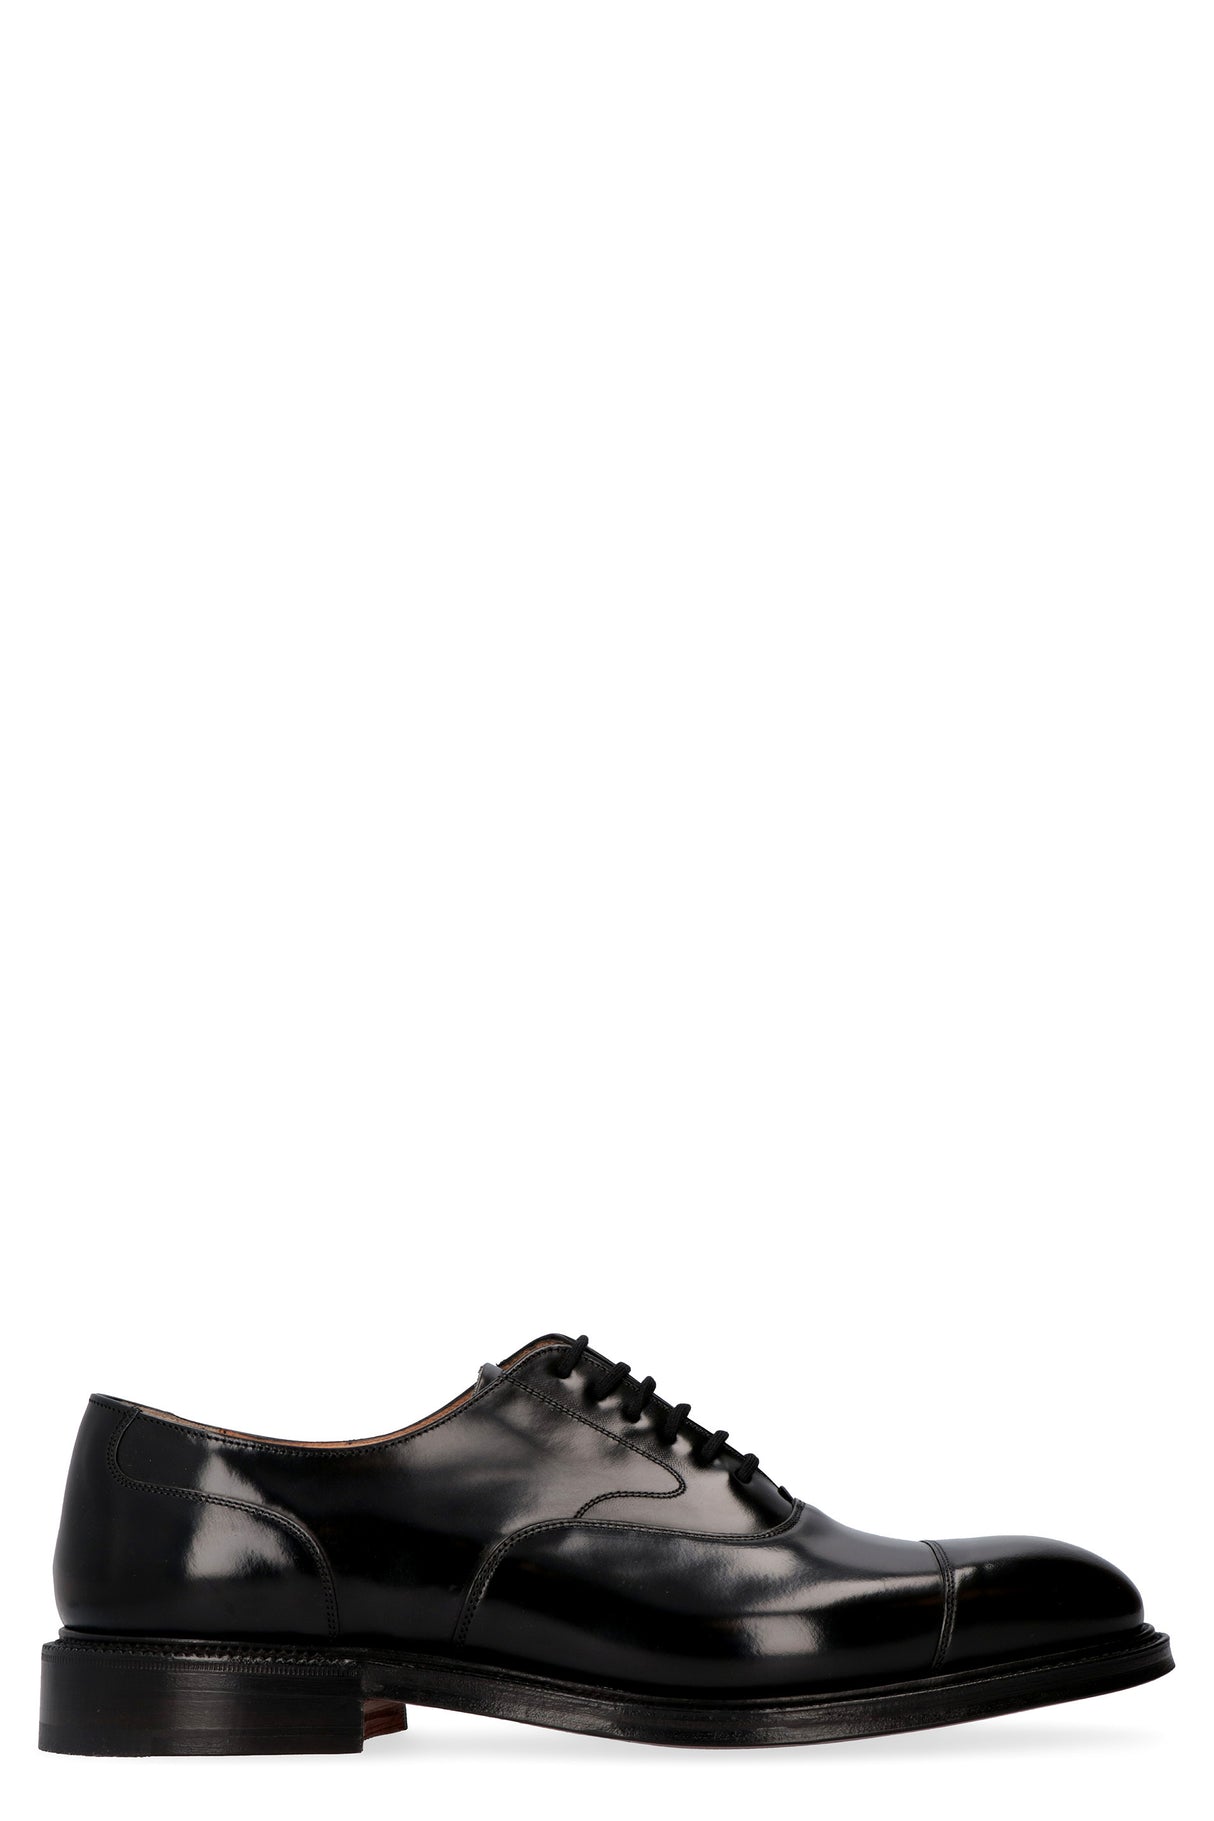 أحذية رجالية جلدية سوداء مربطة برباط، ذات طرف مستدير وتفاصيل ديكورية